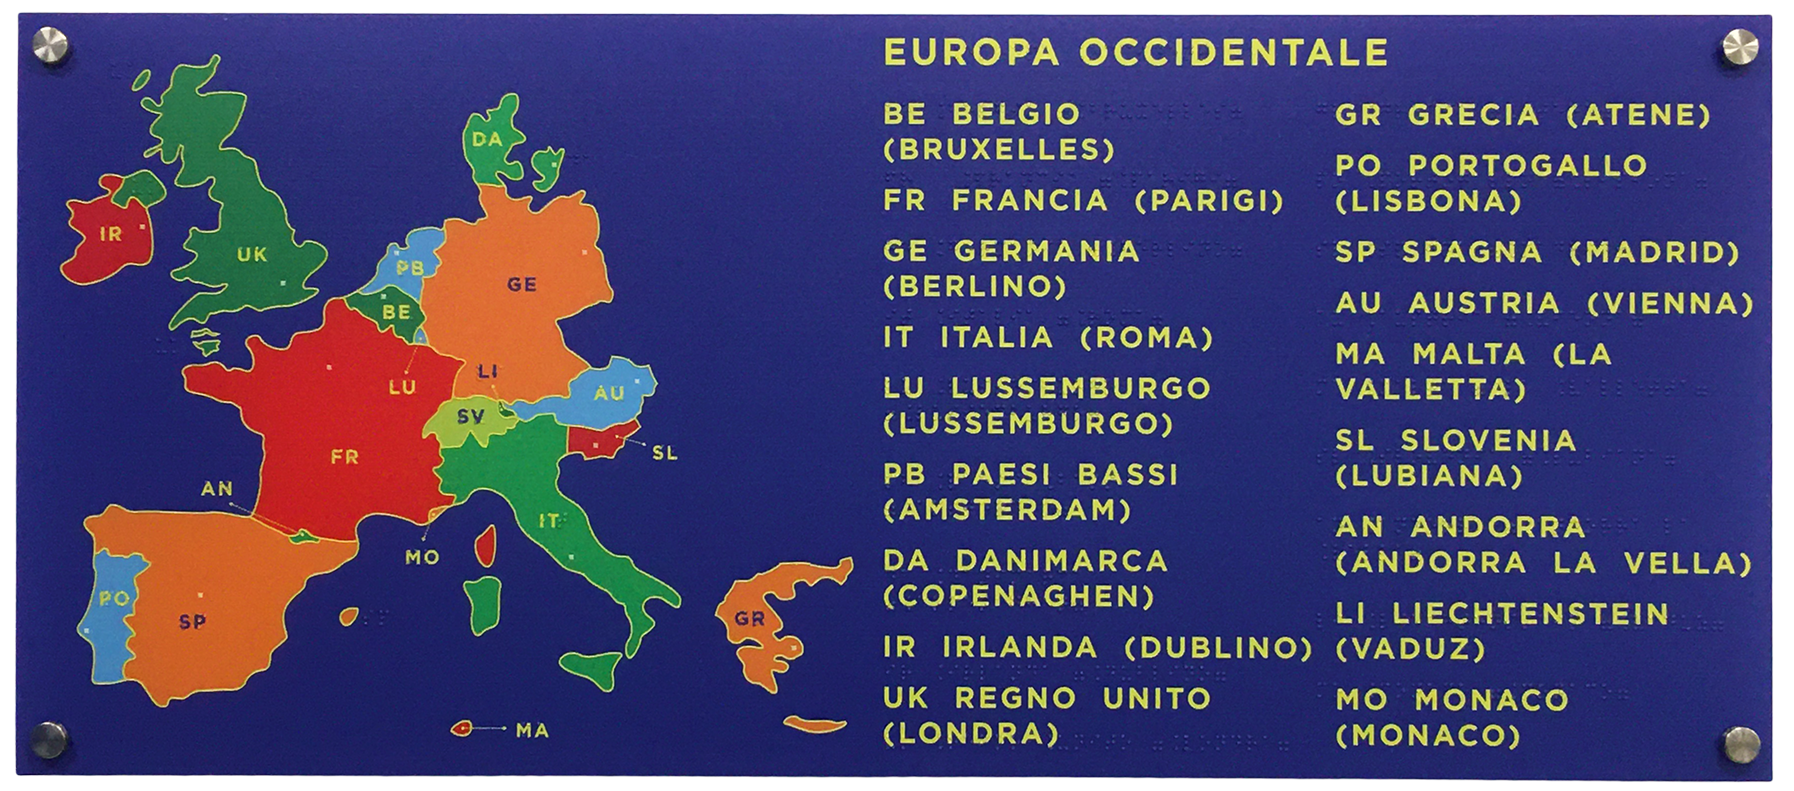 Cartine geografiche a rilievo tattile e Braille - EUROPA OCCIDENTALE - iva al 4%